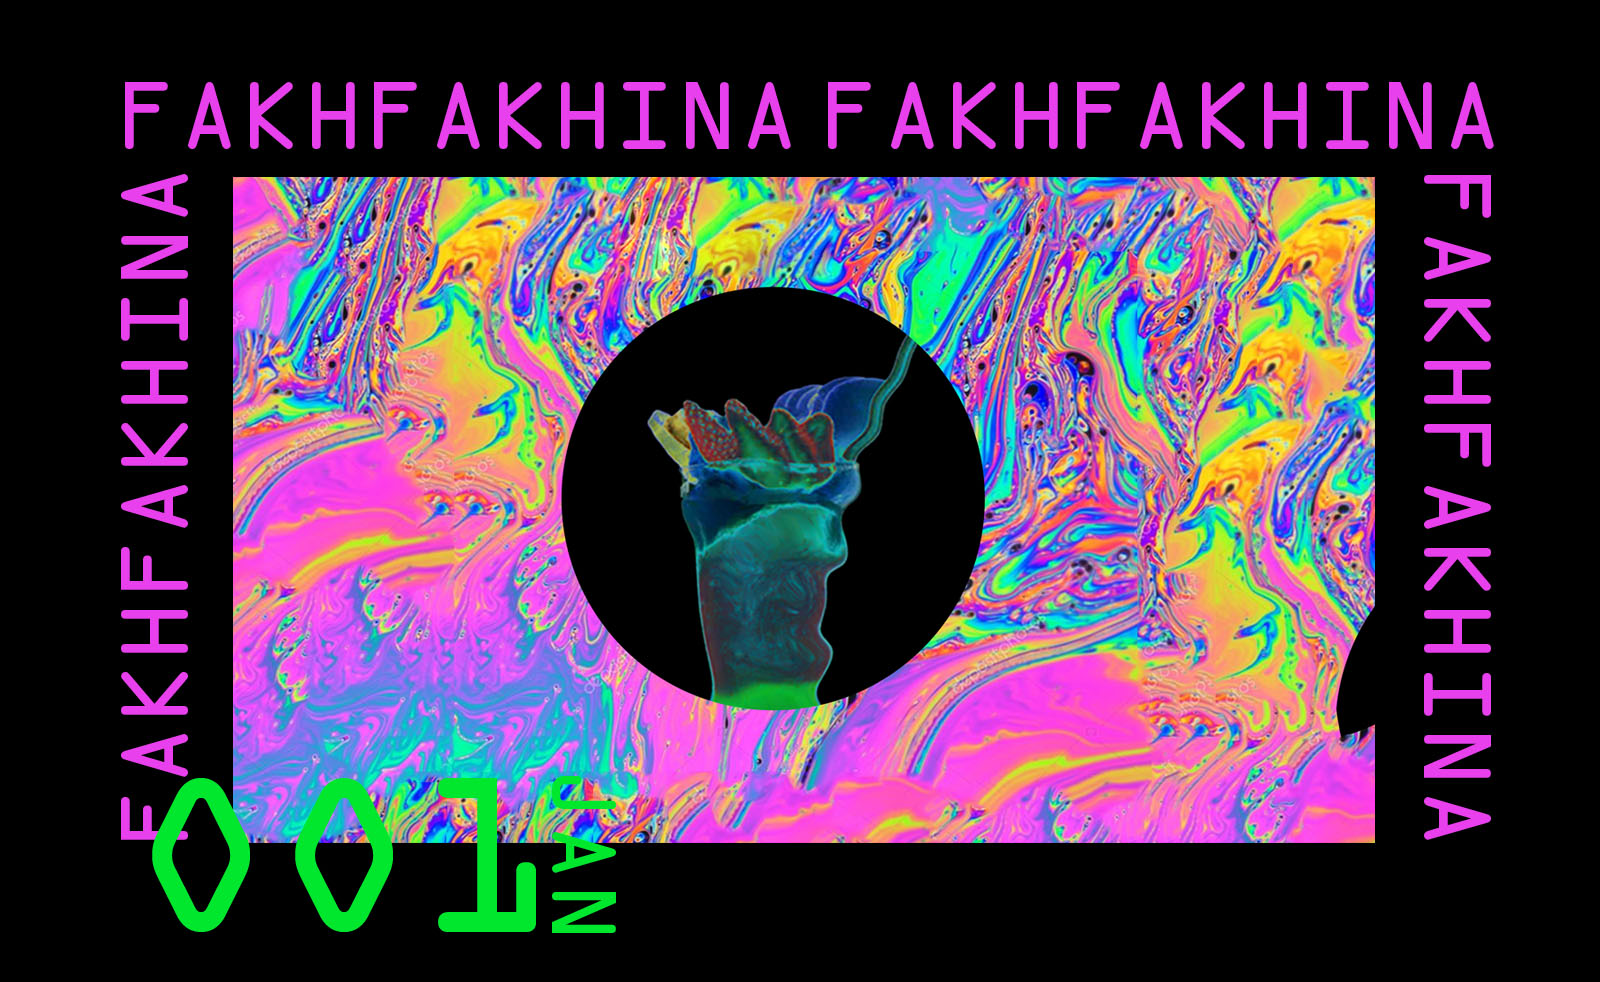 Fakhfakhina 01